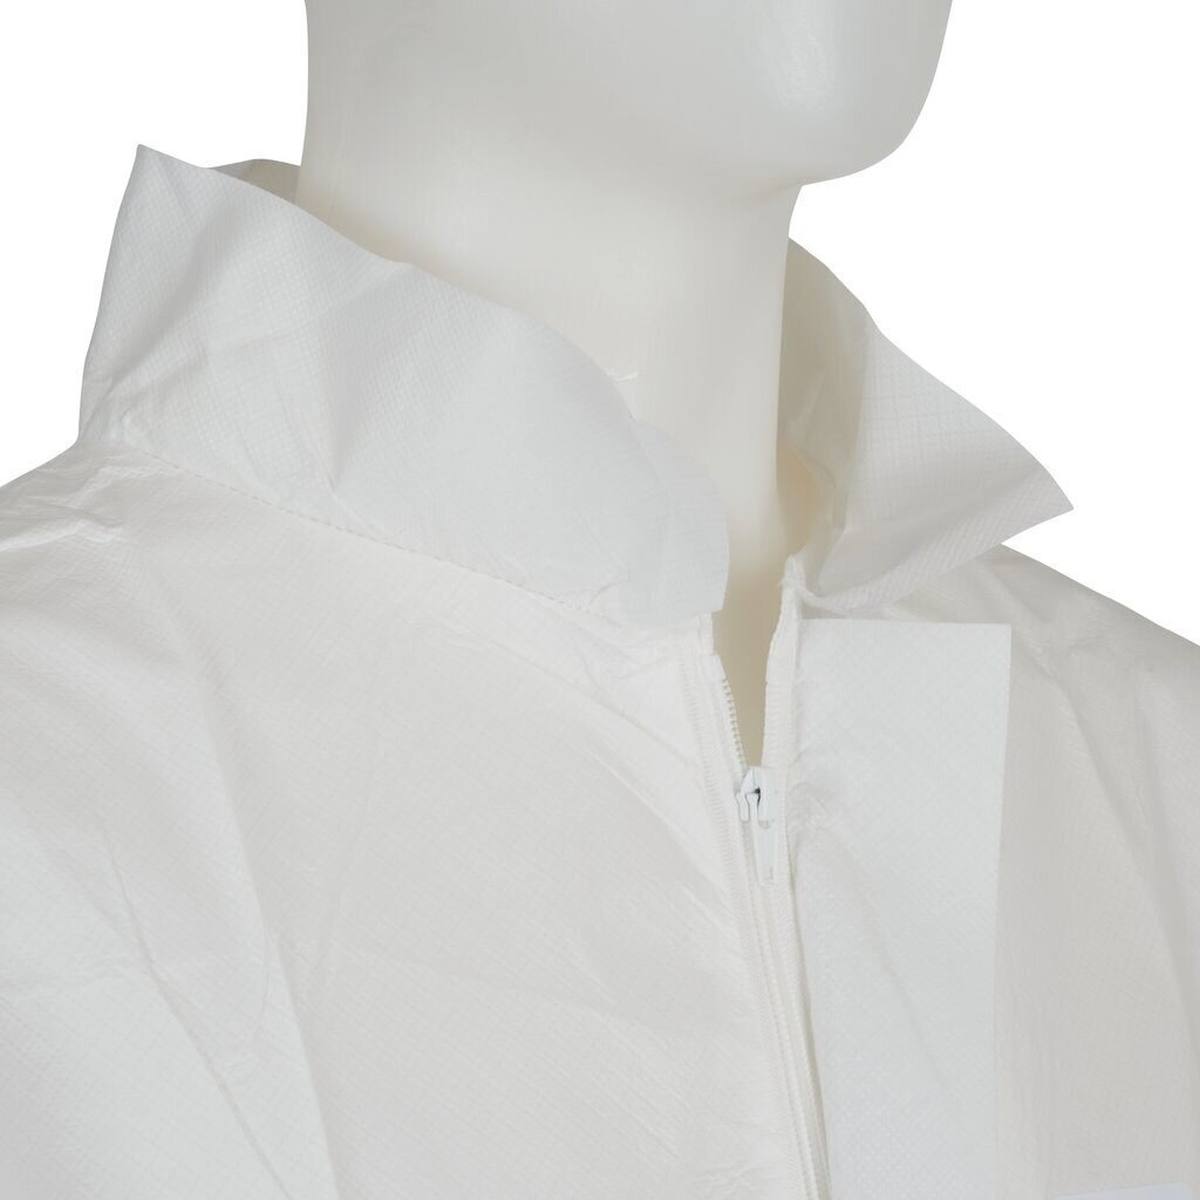 3M 4440 takki, valkoinen, koko M, erityisen hengittävä, erittäin kevyt, vetoketjullinen, neulotut hihansuut.